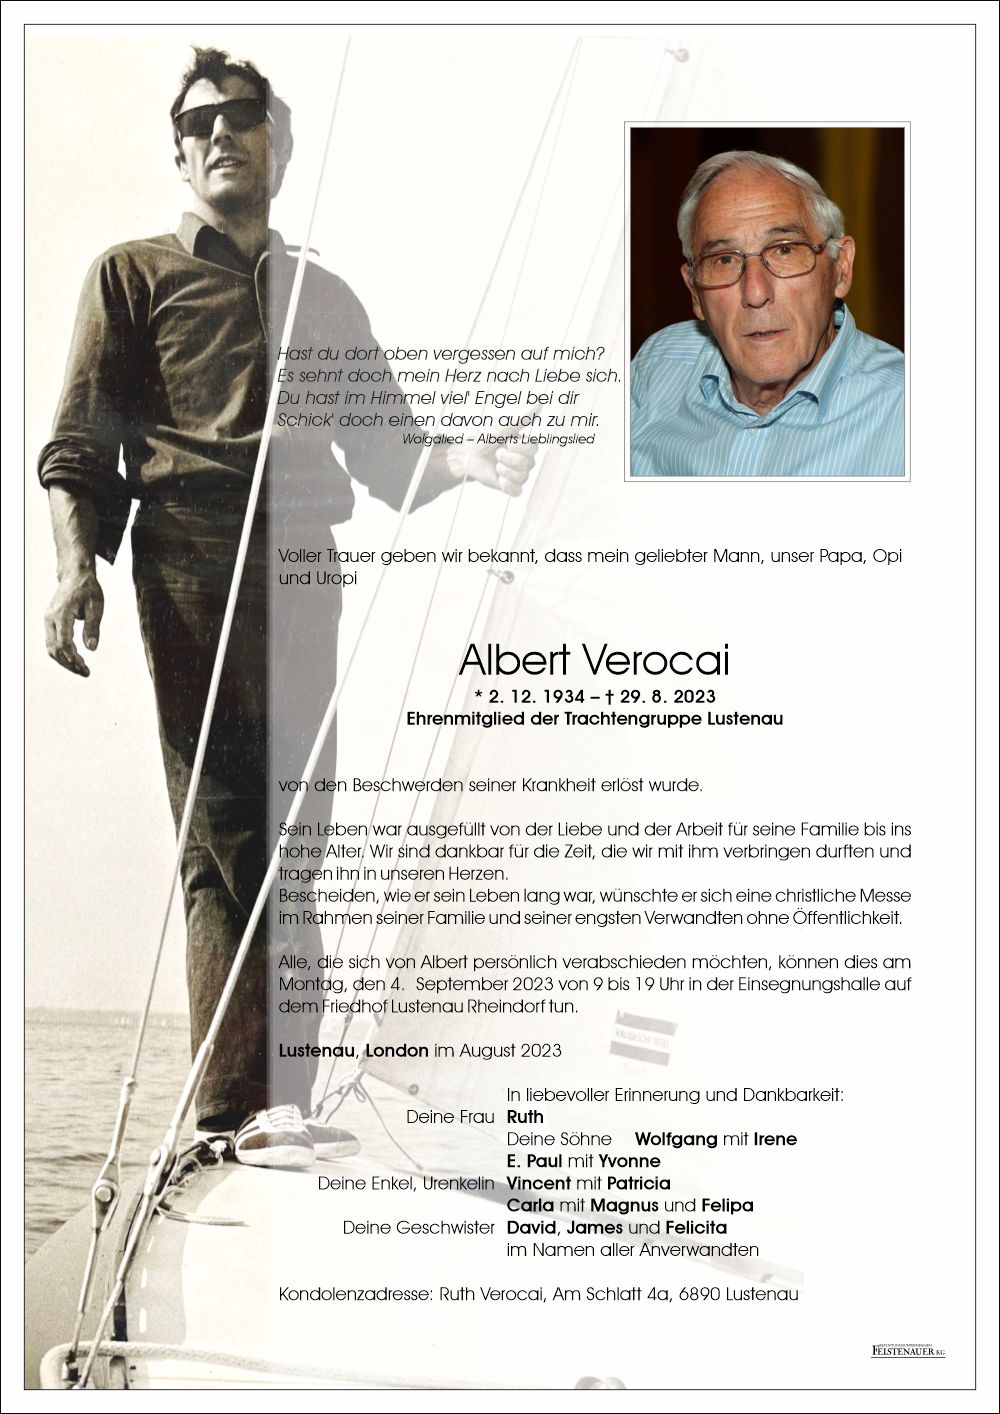 Albert Verocai